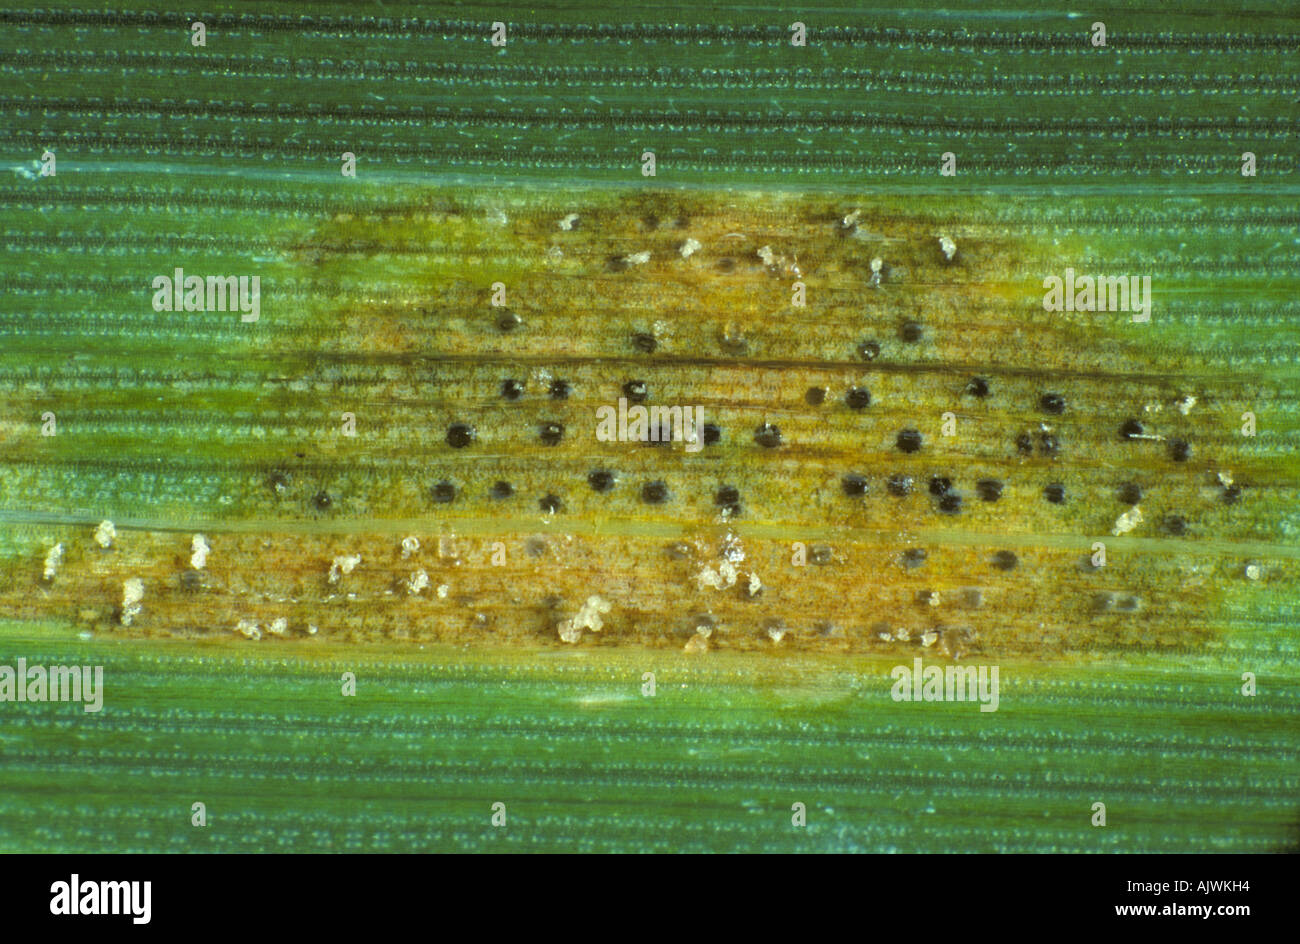 Septoria foglia macchia Zymosettoria lesione tritici con pycnidia cirri su foglia di grano Foto Stock